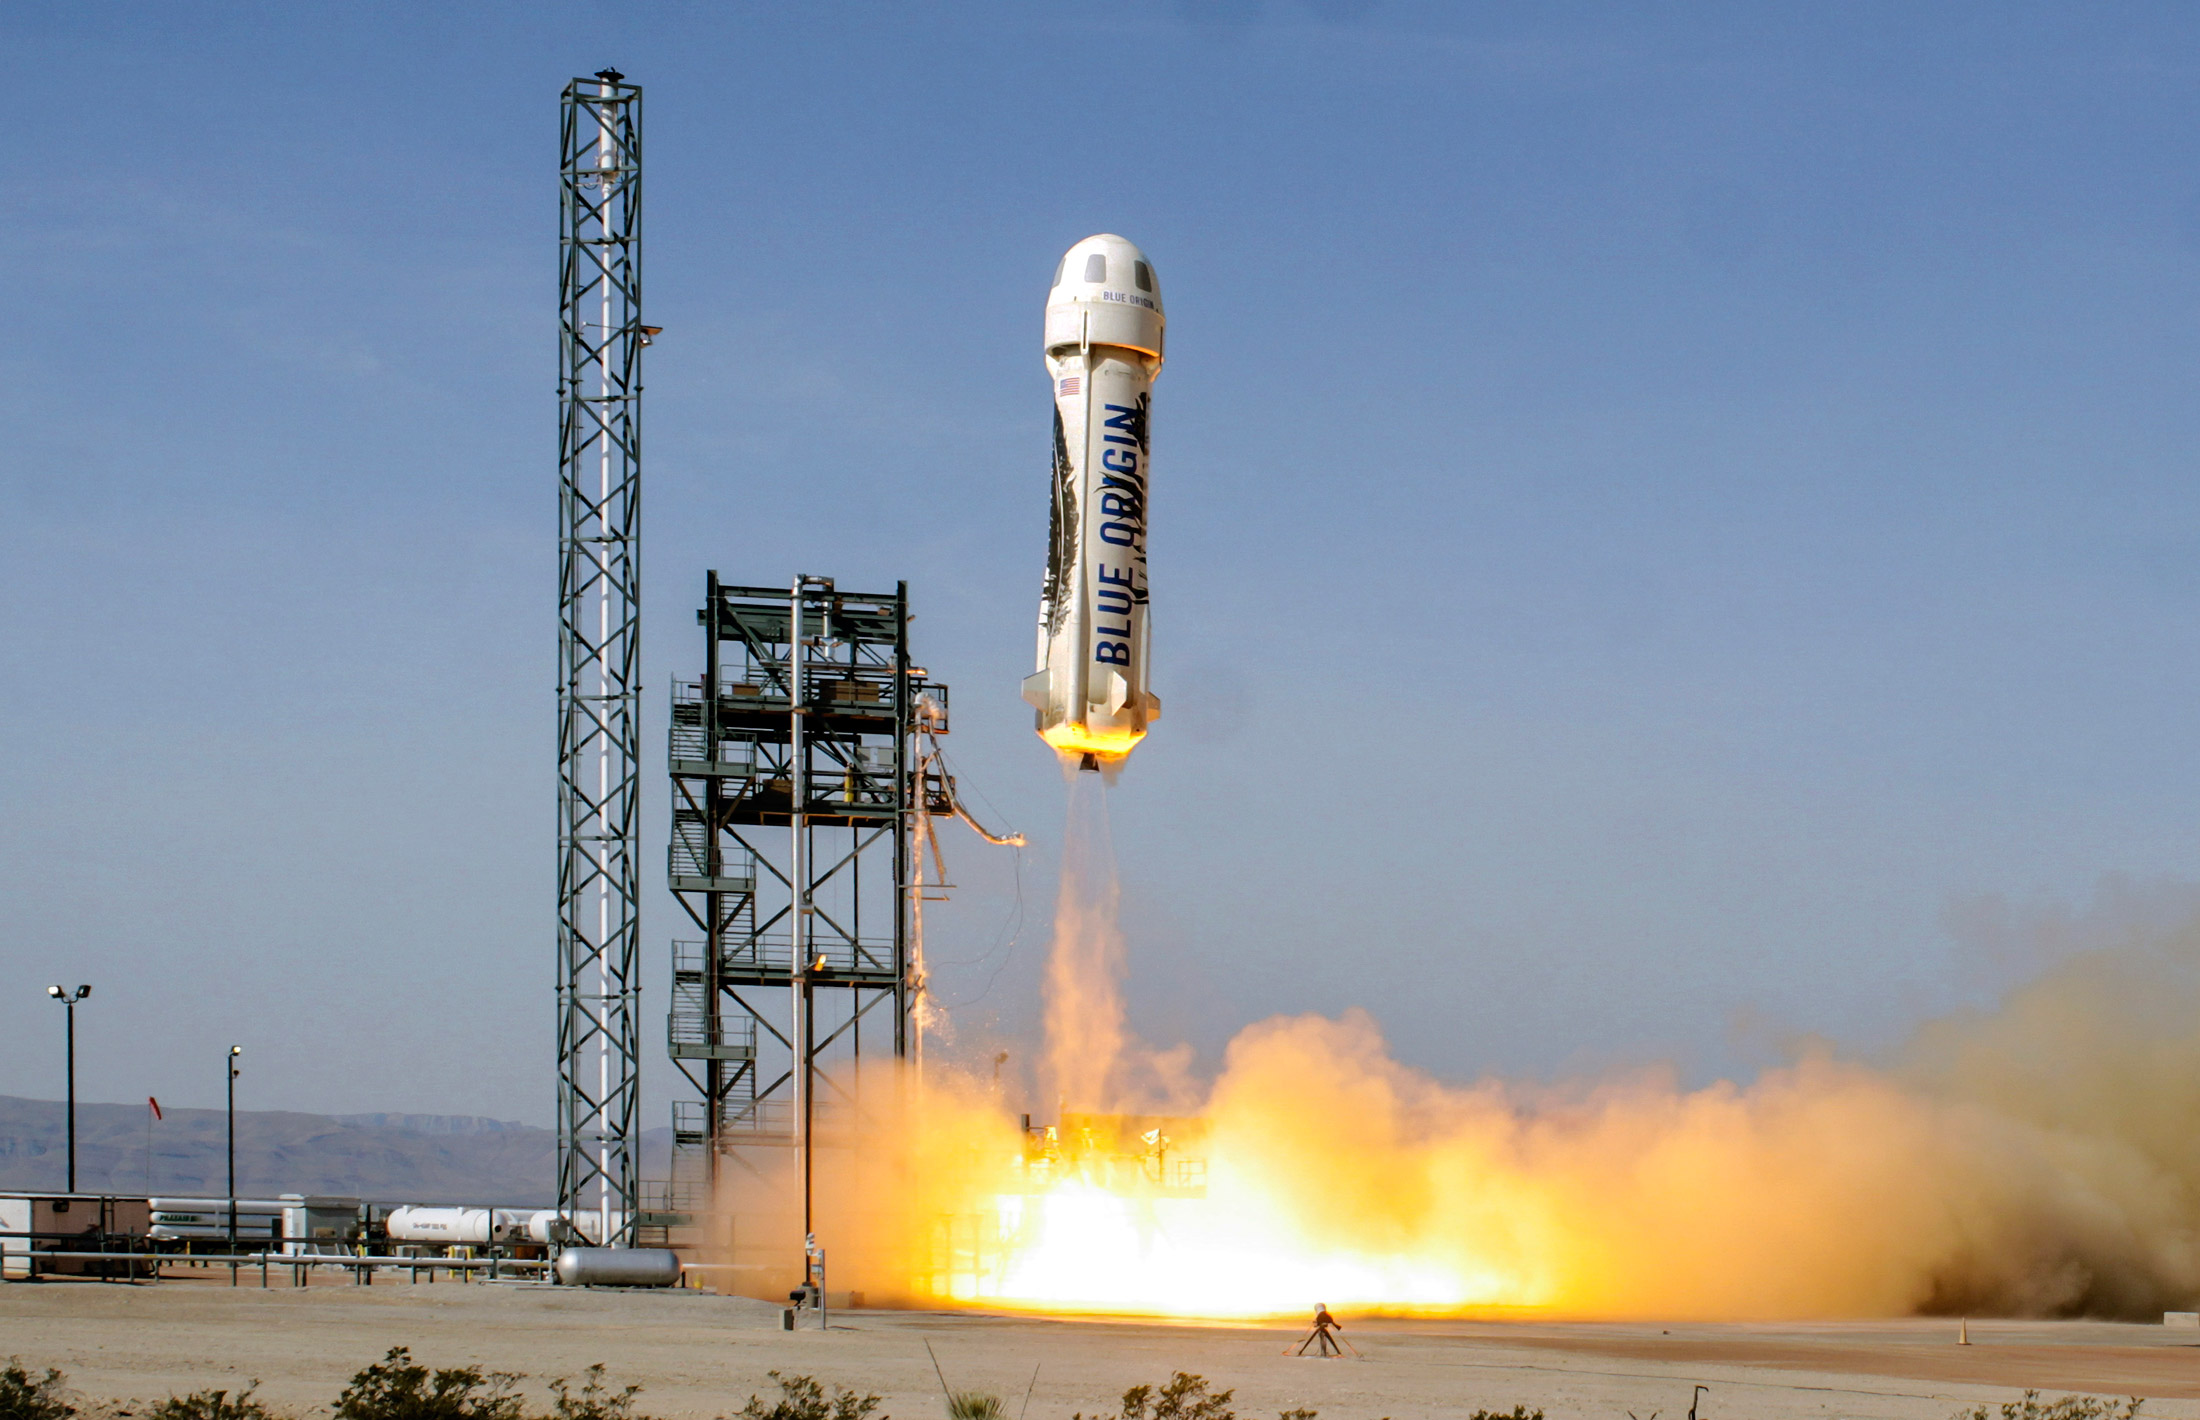  Le lanceur suborbital New Shepard de Blue Origin au décollage. Celui-ci ne doit pas être confondu avec le Falcon 9 de SpaceX, qui va beaucoup plus haut et qui est capable de transporter des charges de plusieurs tonnes. Ces lanceurs bousculent tous les deux le secteur spatial mais ils ne volent pas dans la même catégorie. © Blue Origin